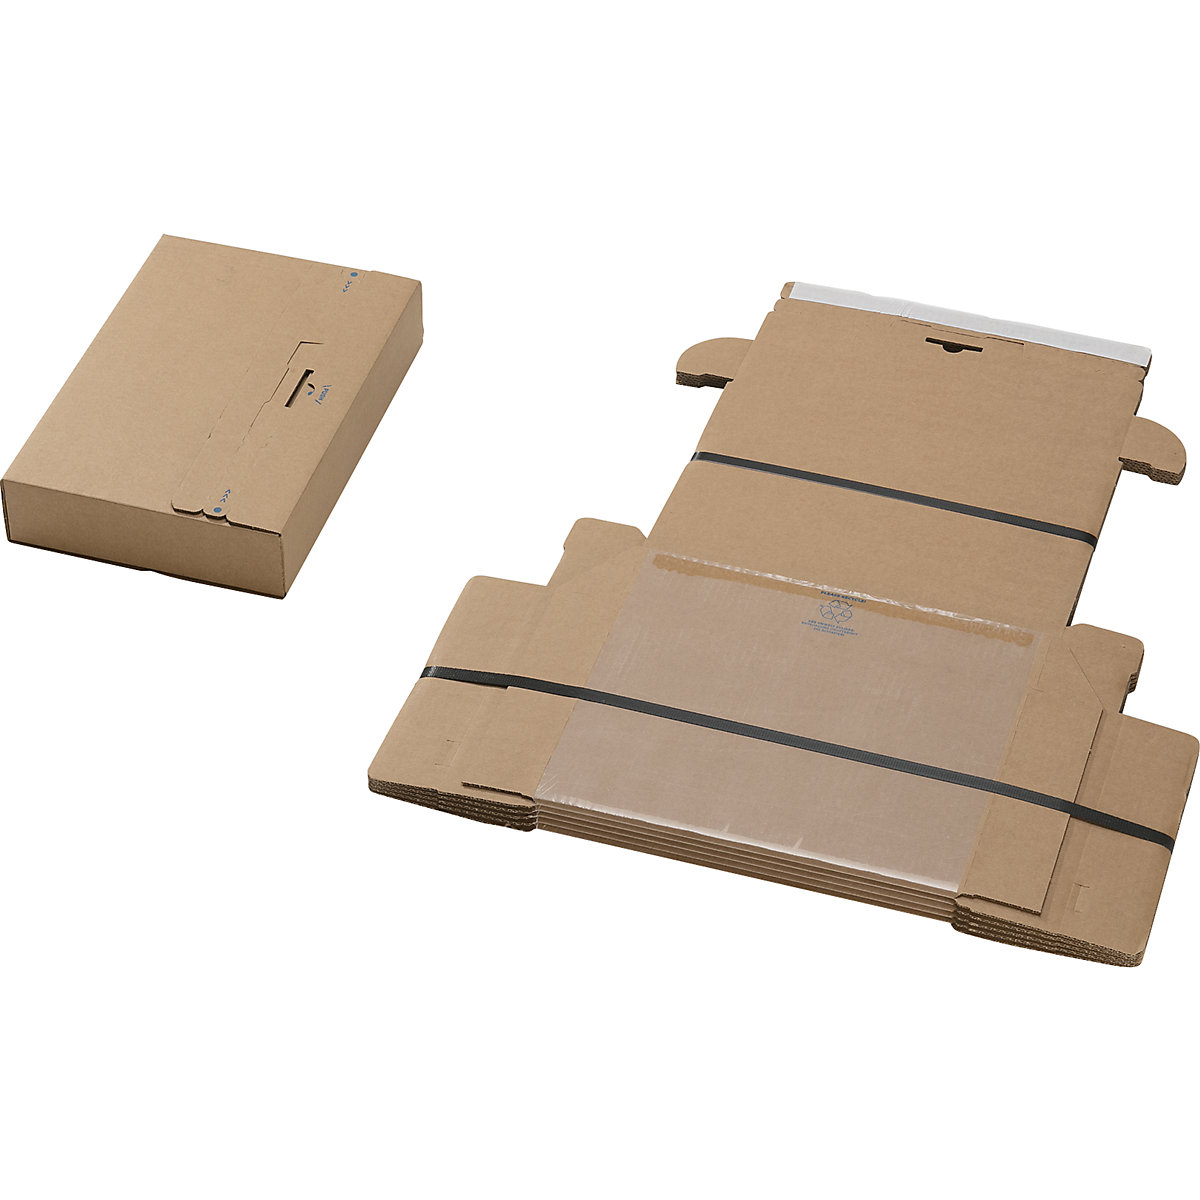 Embalagem de fixação, ''all in one'', embalagem de 40 unidades, para dimensões da embalagem CxLxA 300 x 190 x 40 mm-2